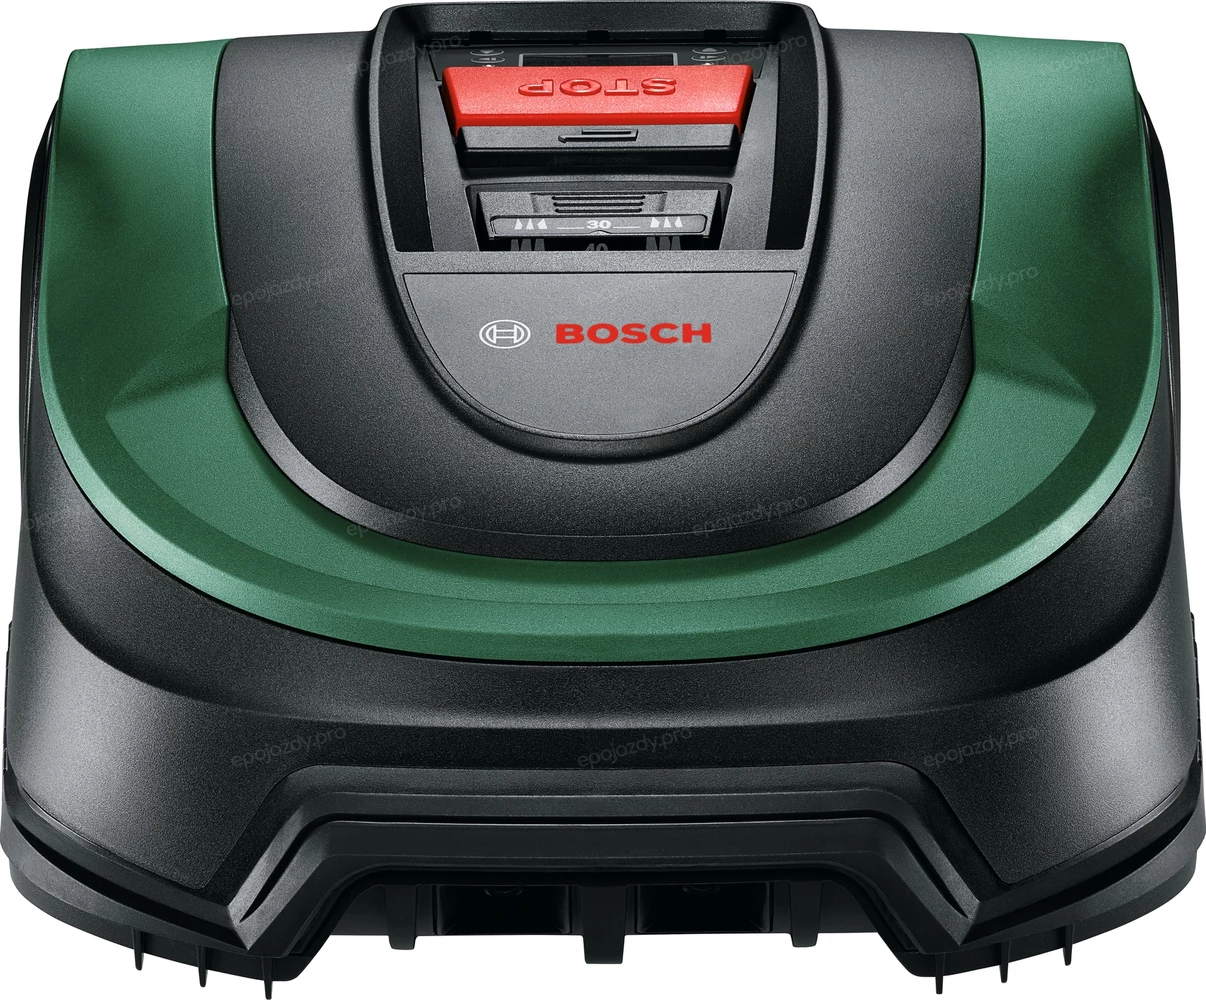 Robot koszący Bosch Indego S+ 500 samodzielnie opracowuje kalendarz koszenia